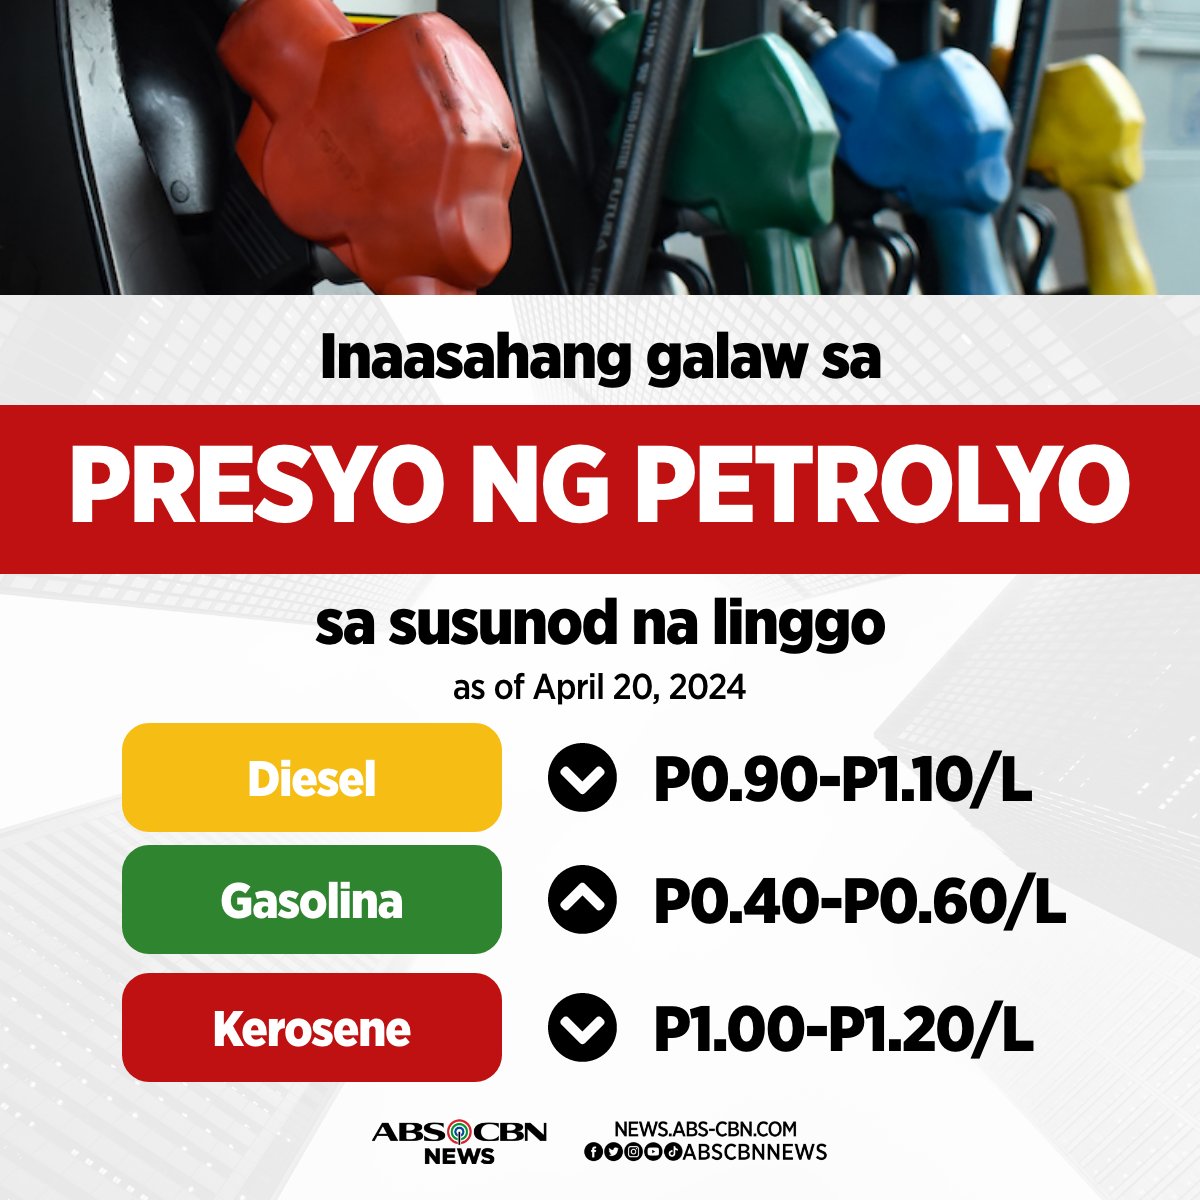 Heads up, mga motorista!

May kaunting rollback sa presyo ng diesel at kerosene, samantalang inaasahan pa ring tumaas ang presyo ng gasolina sa susunod na linggo. #PricePatrol